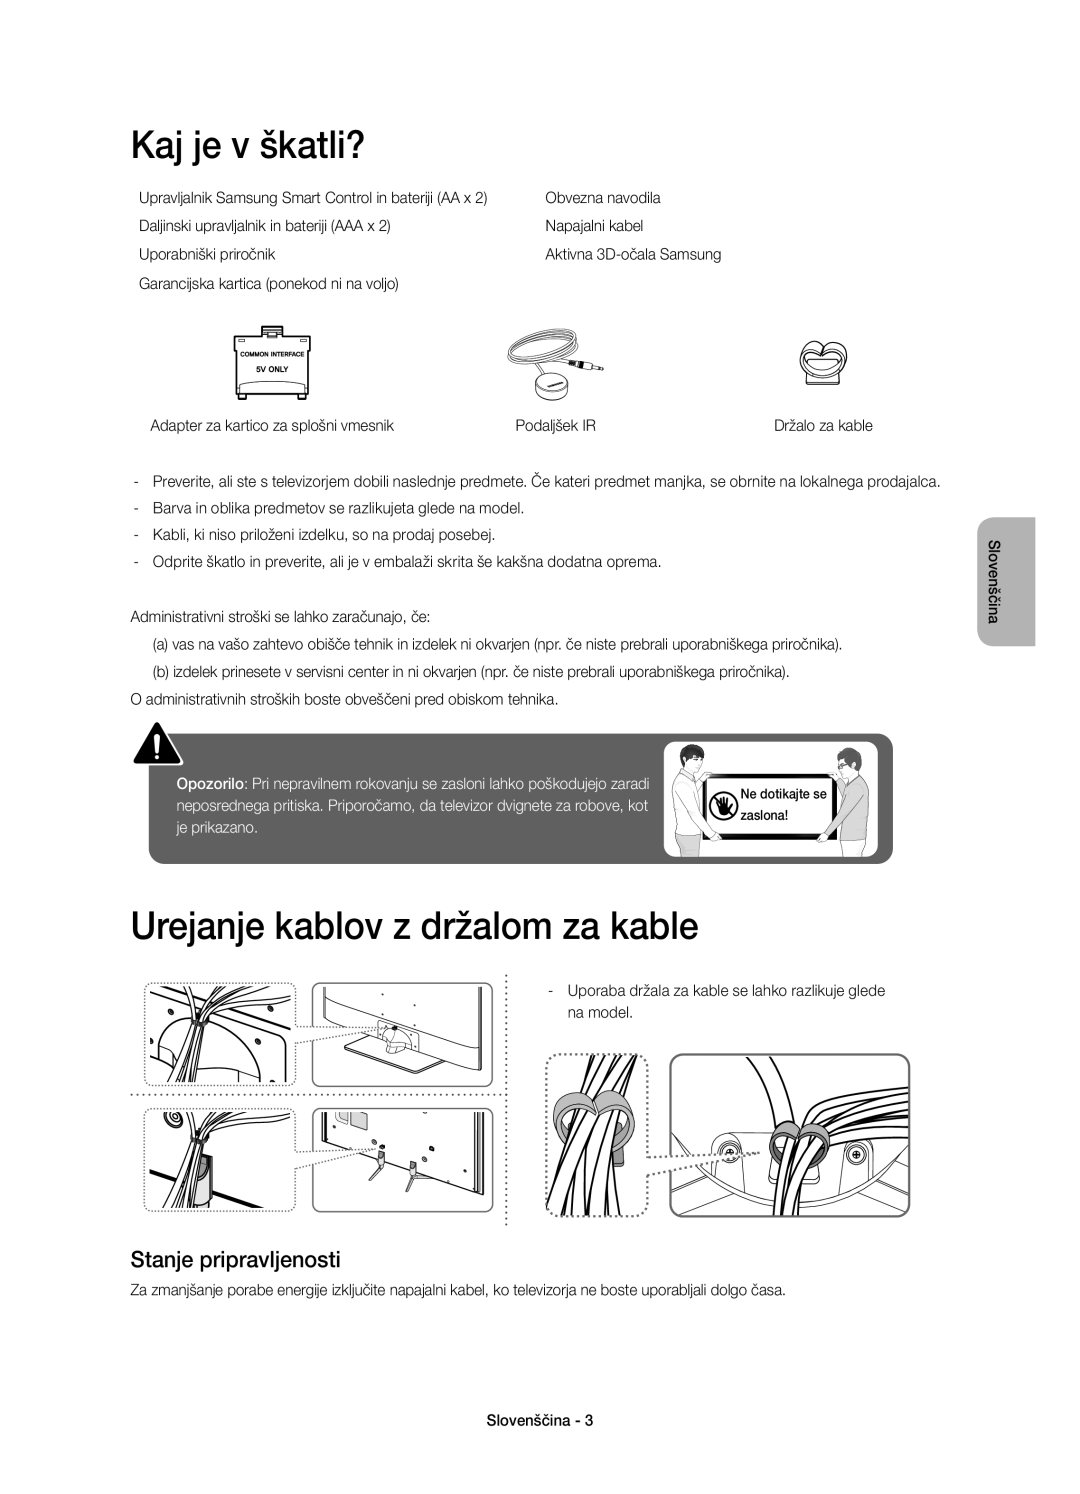 Samsung UE40H6670SLXZF manual Kaj je v škatli?, Urejanje kablov z držalom za kable, Stanje pripravljenosti, je prikazano 